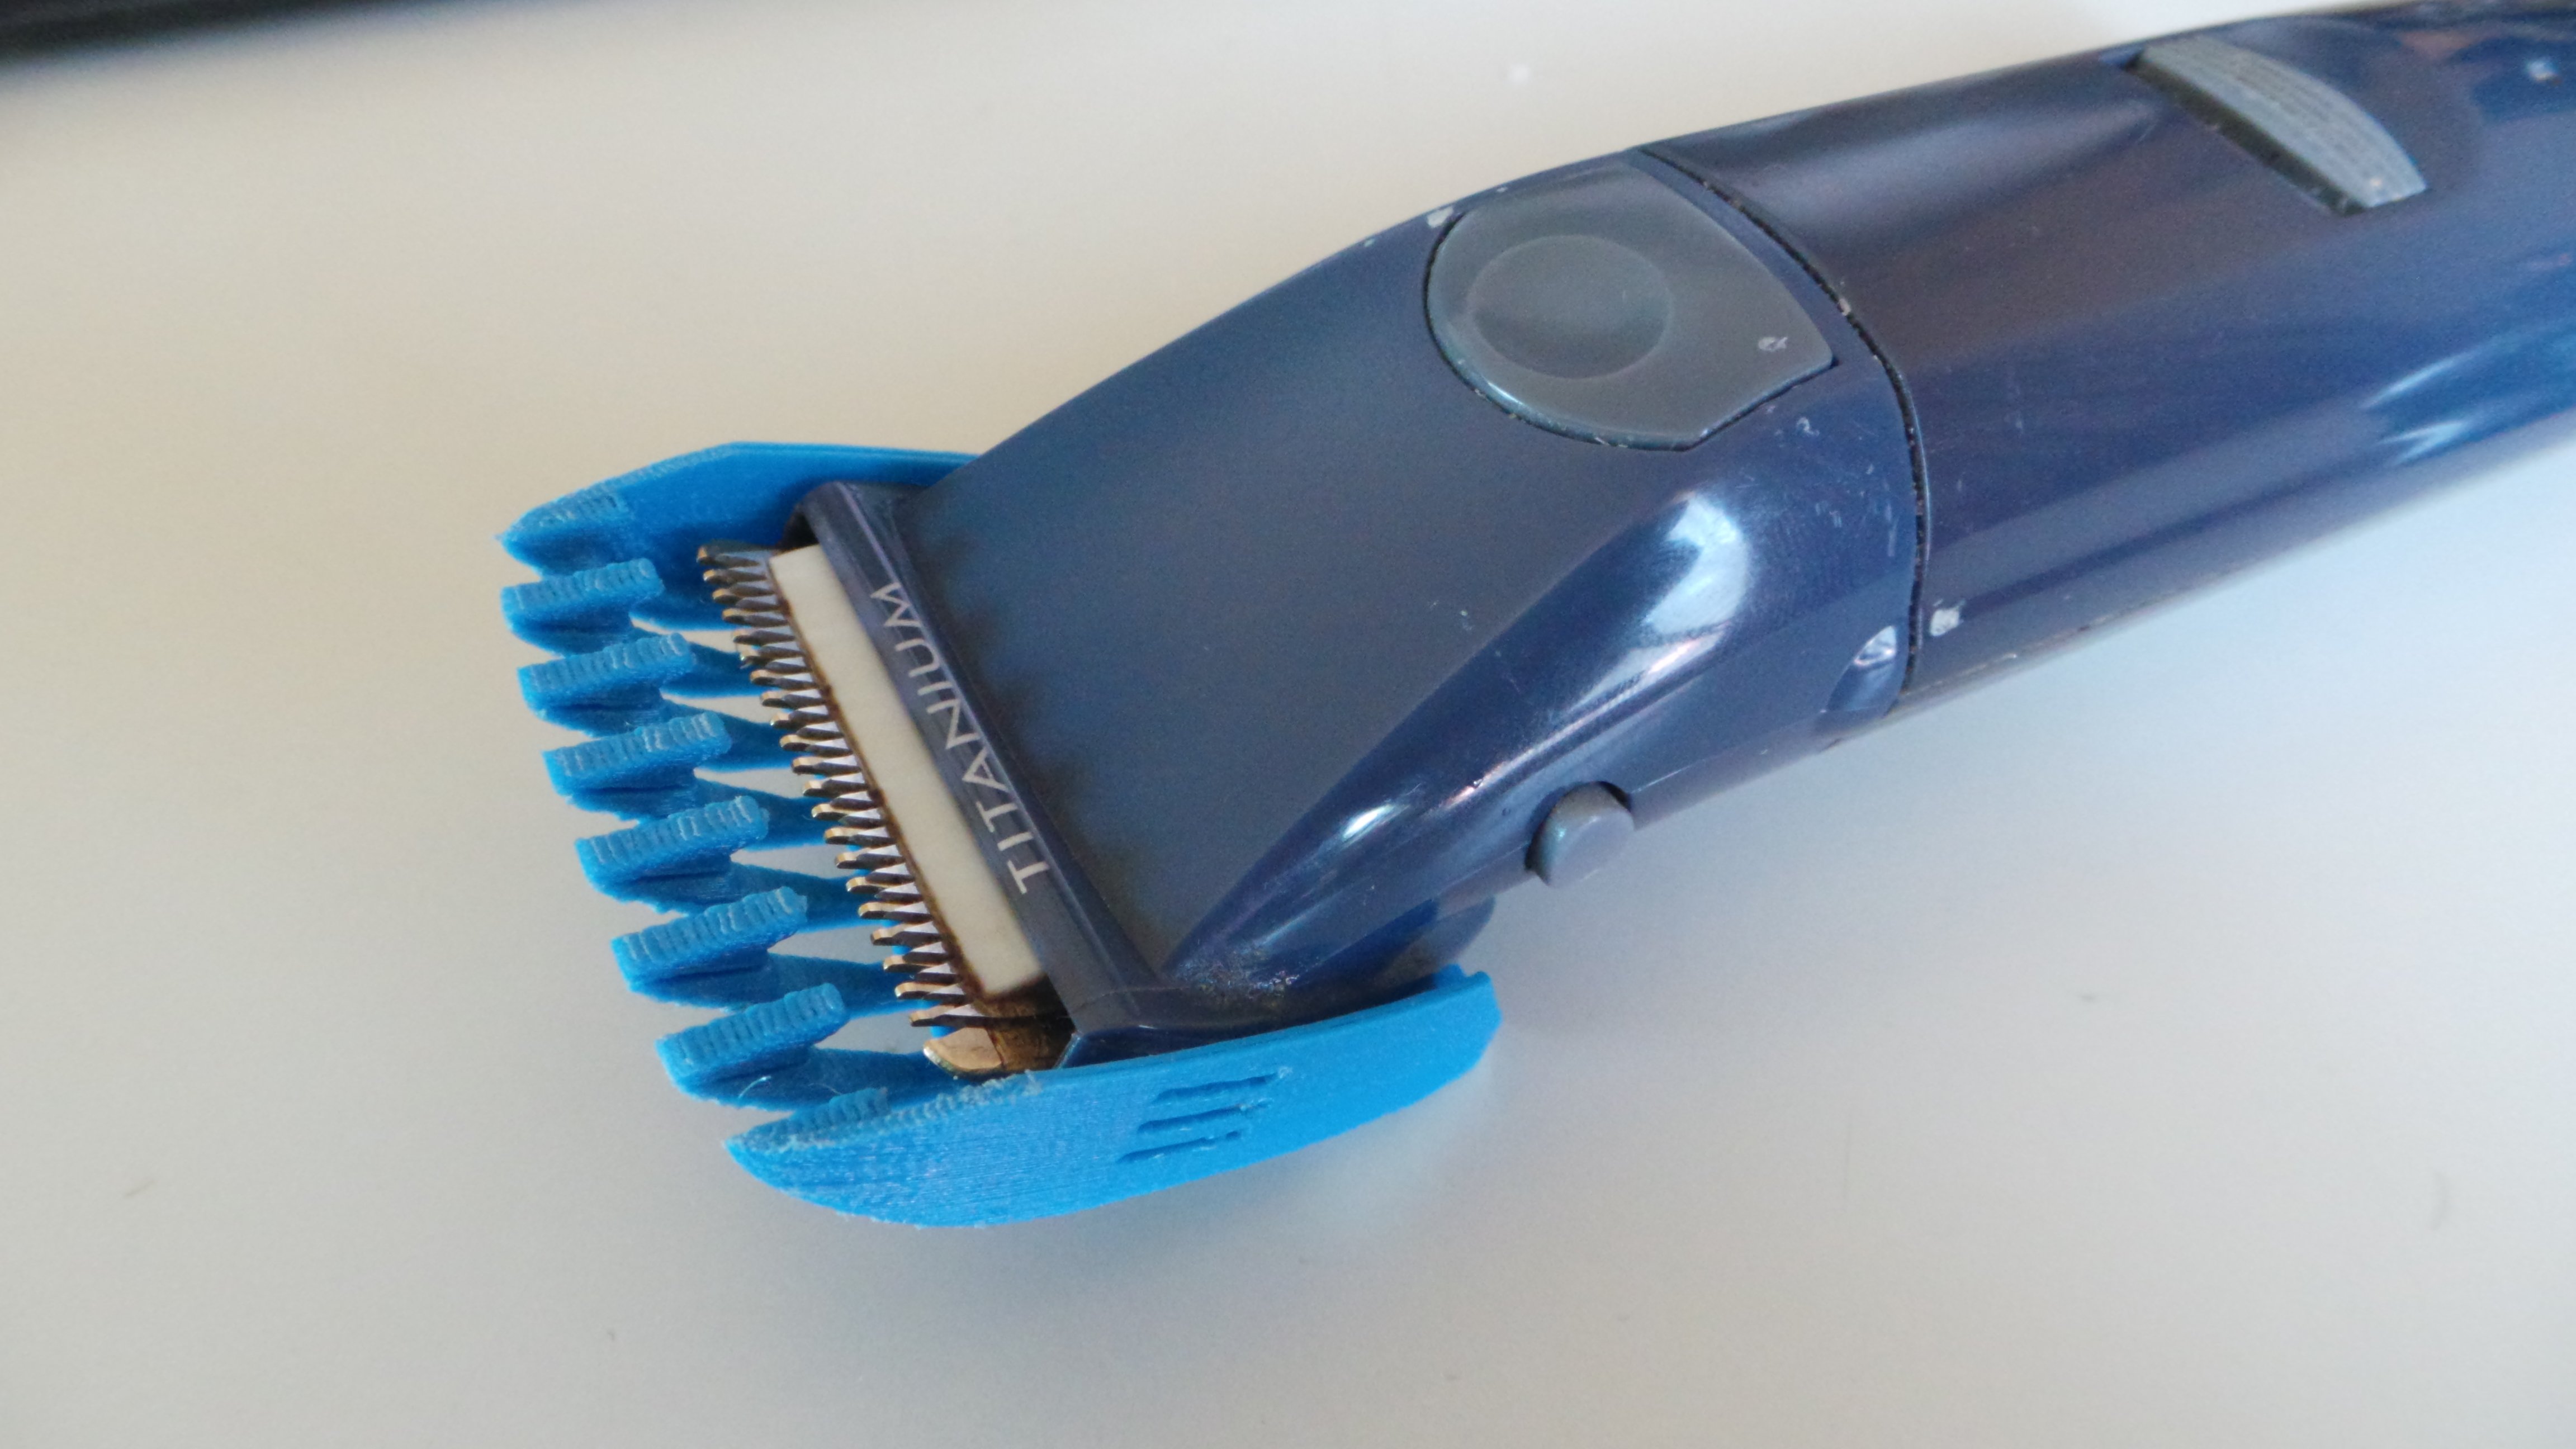 5mm beard trimmer